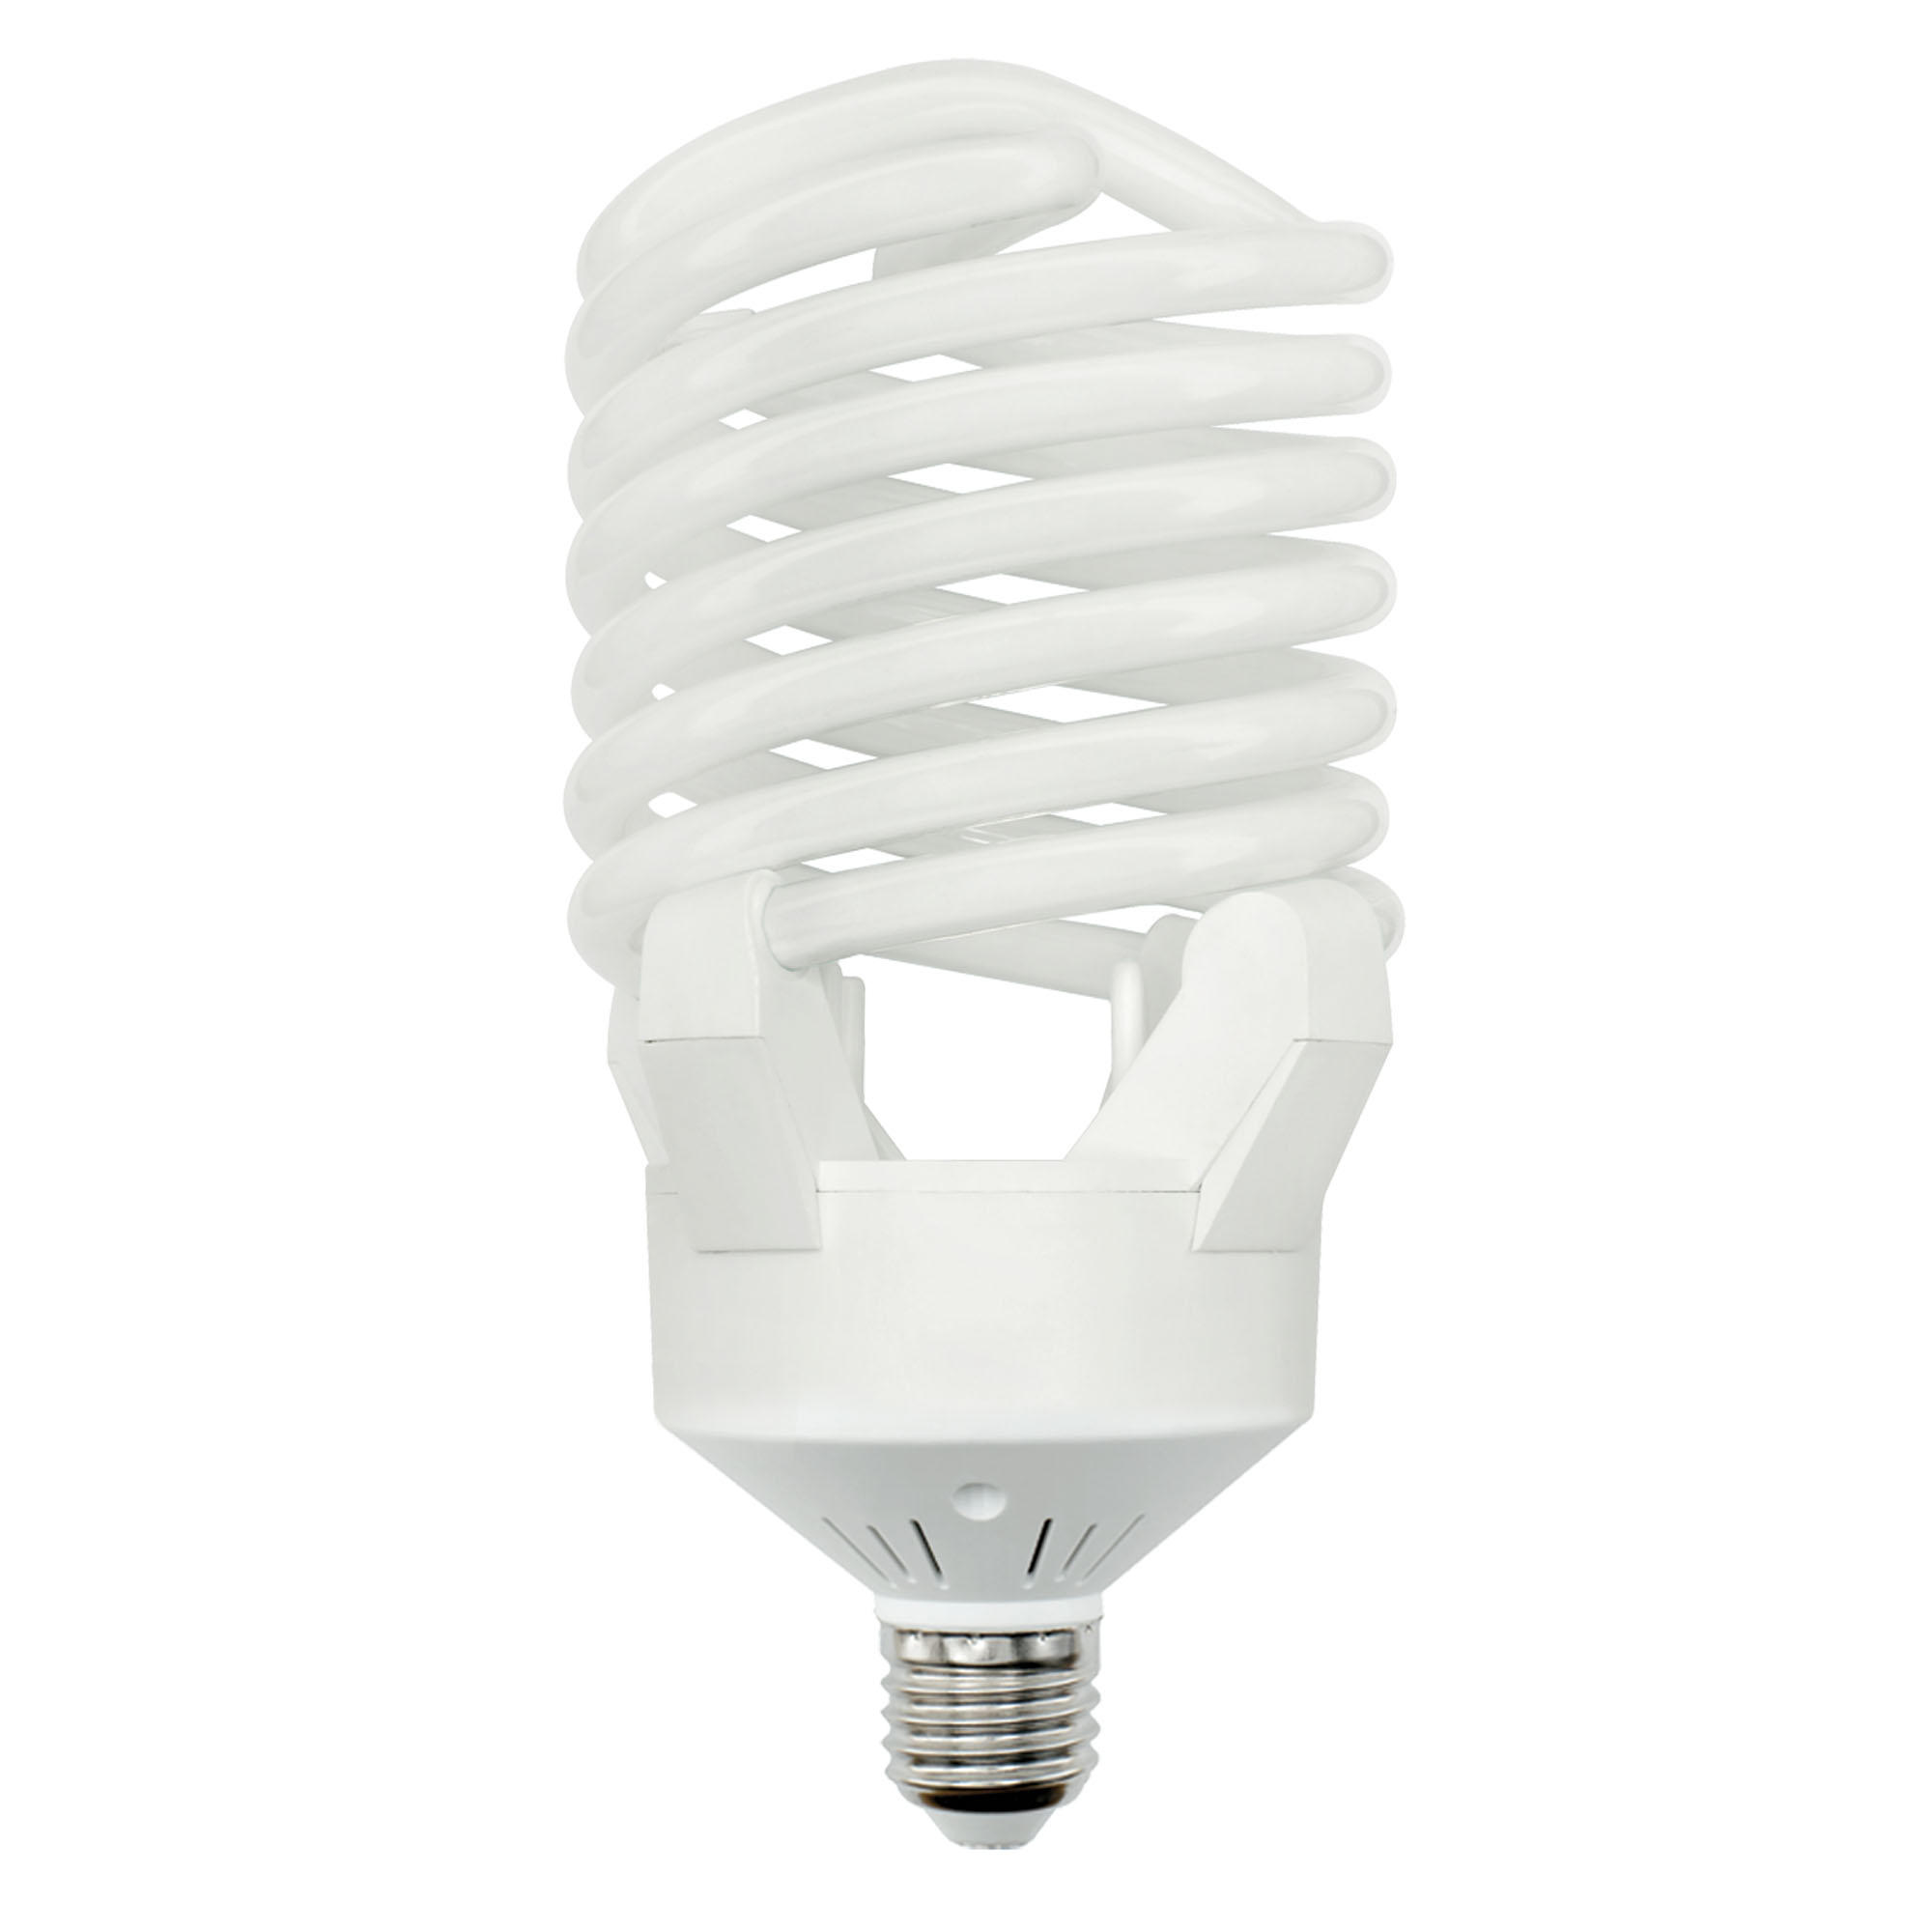 ESL-S23-120-6400-E27 Лампа энергосберегающая. Картонная упаковка